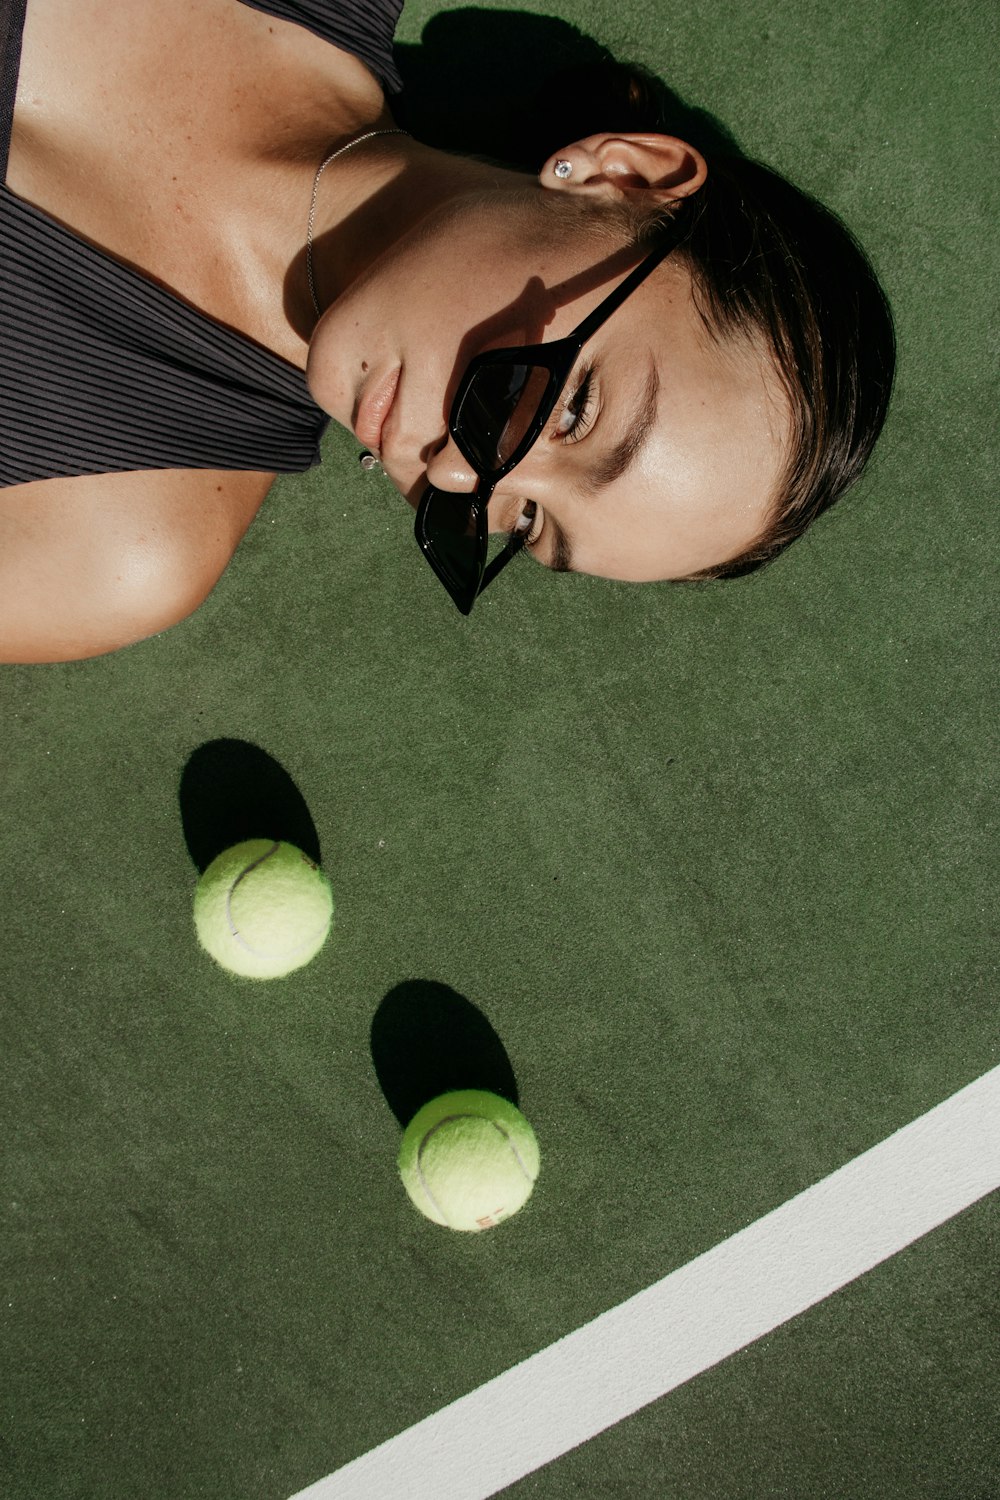 Frau liegt neben zwei grünen Tennisbällen